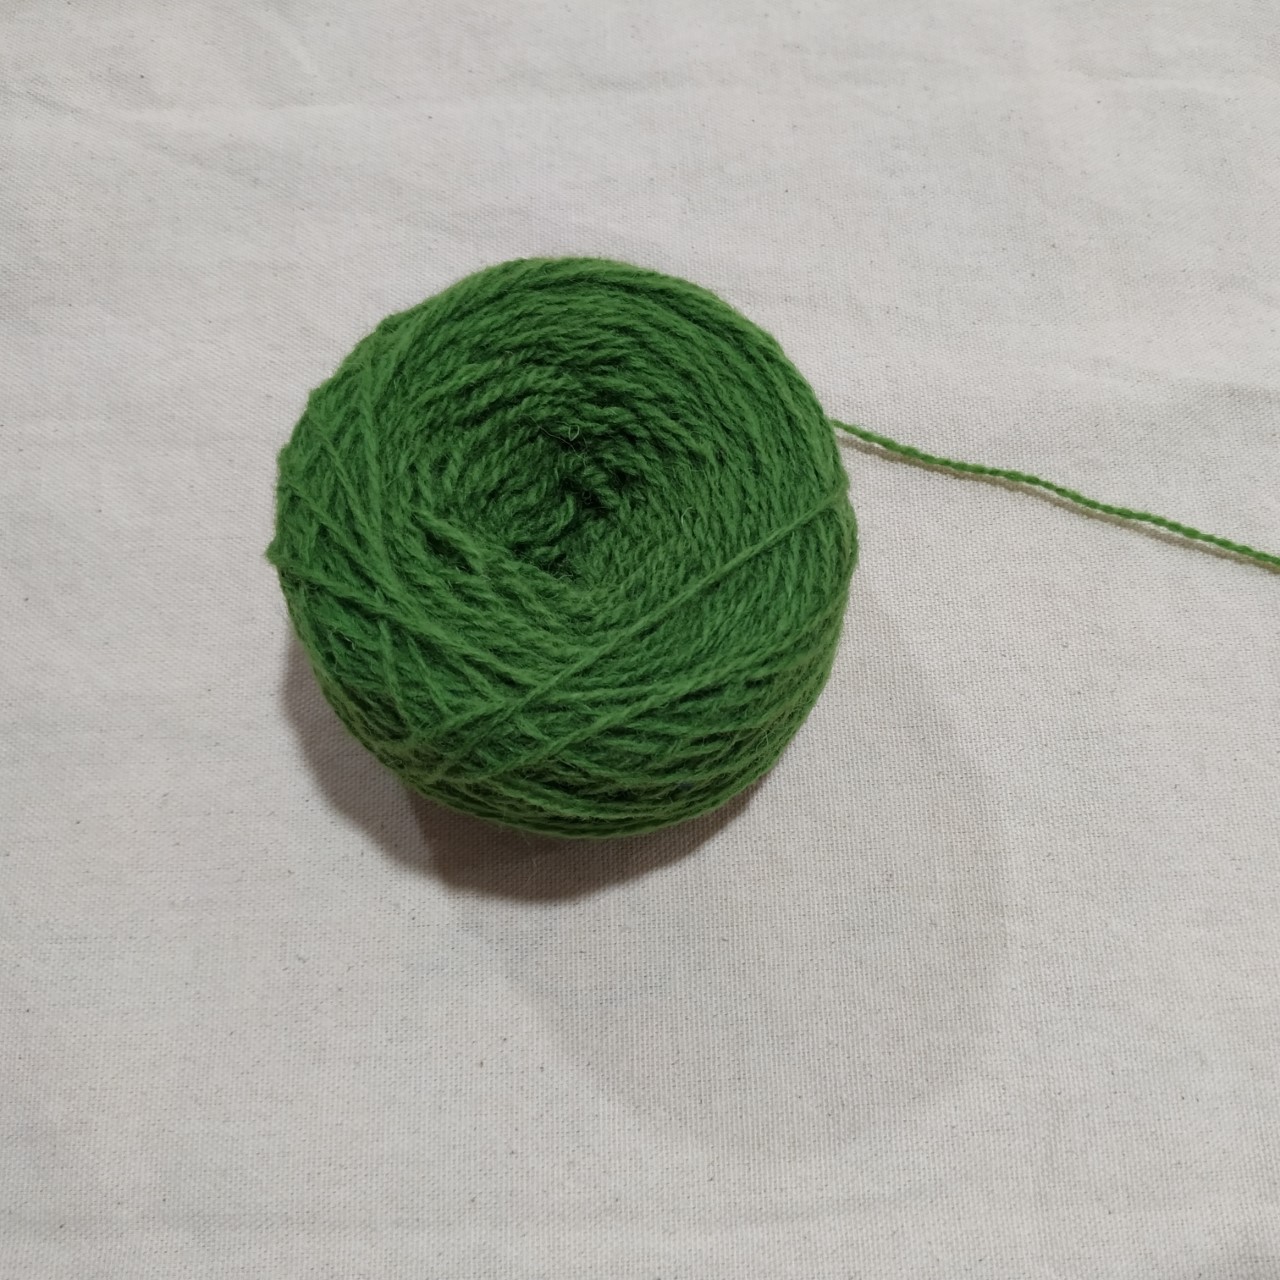 Ovillo lana verde hierba. - Confecciones Ibañez